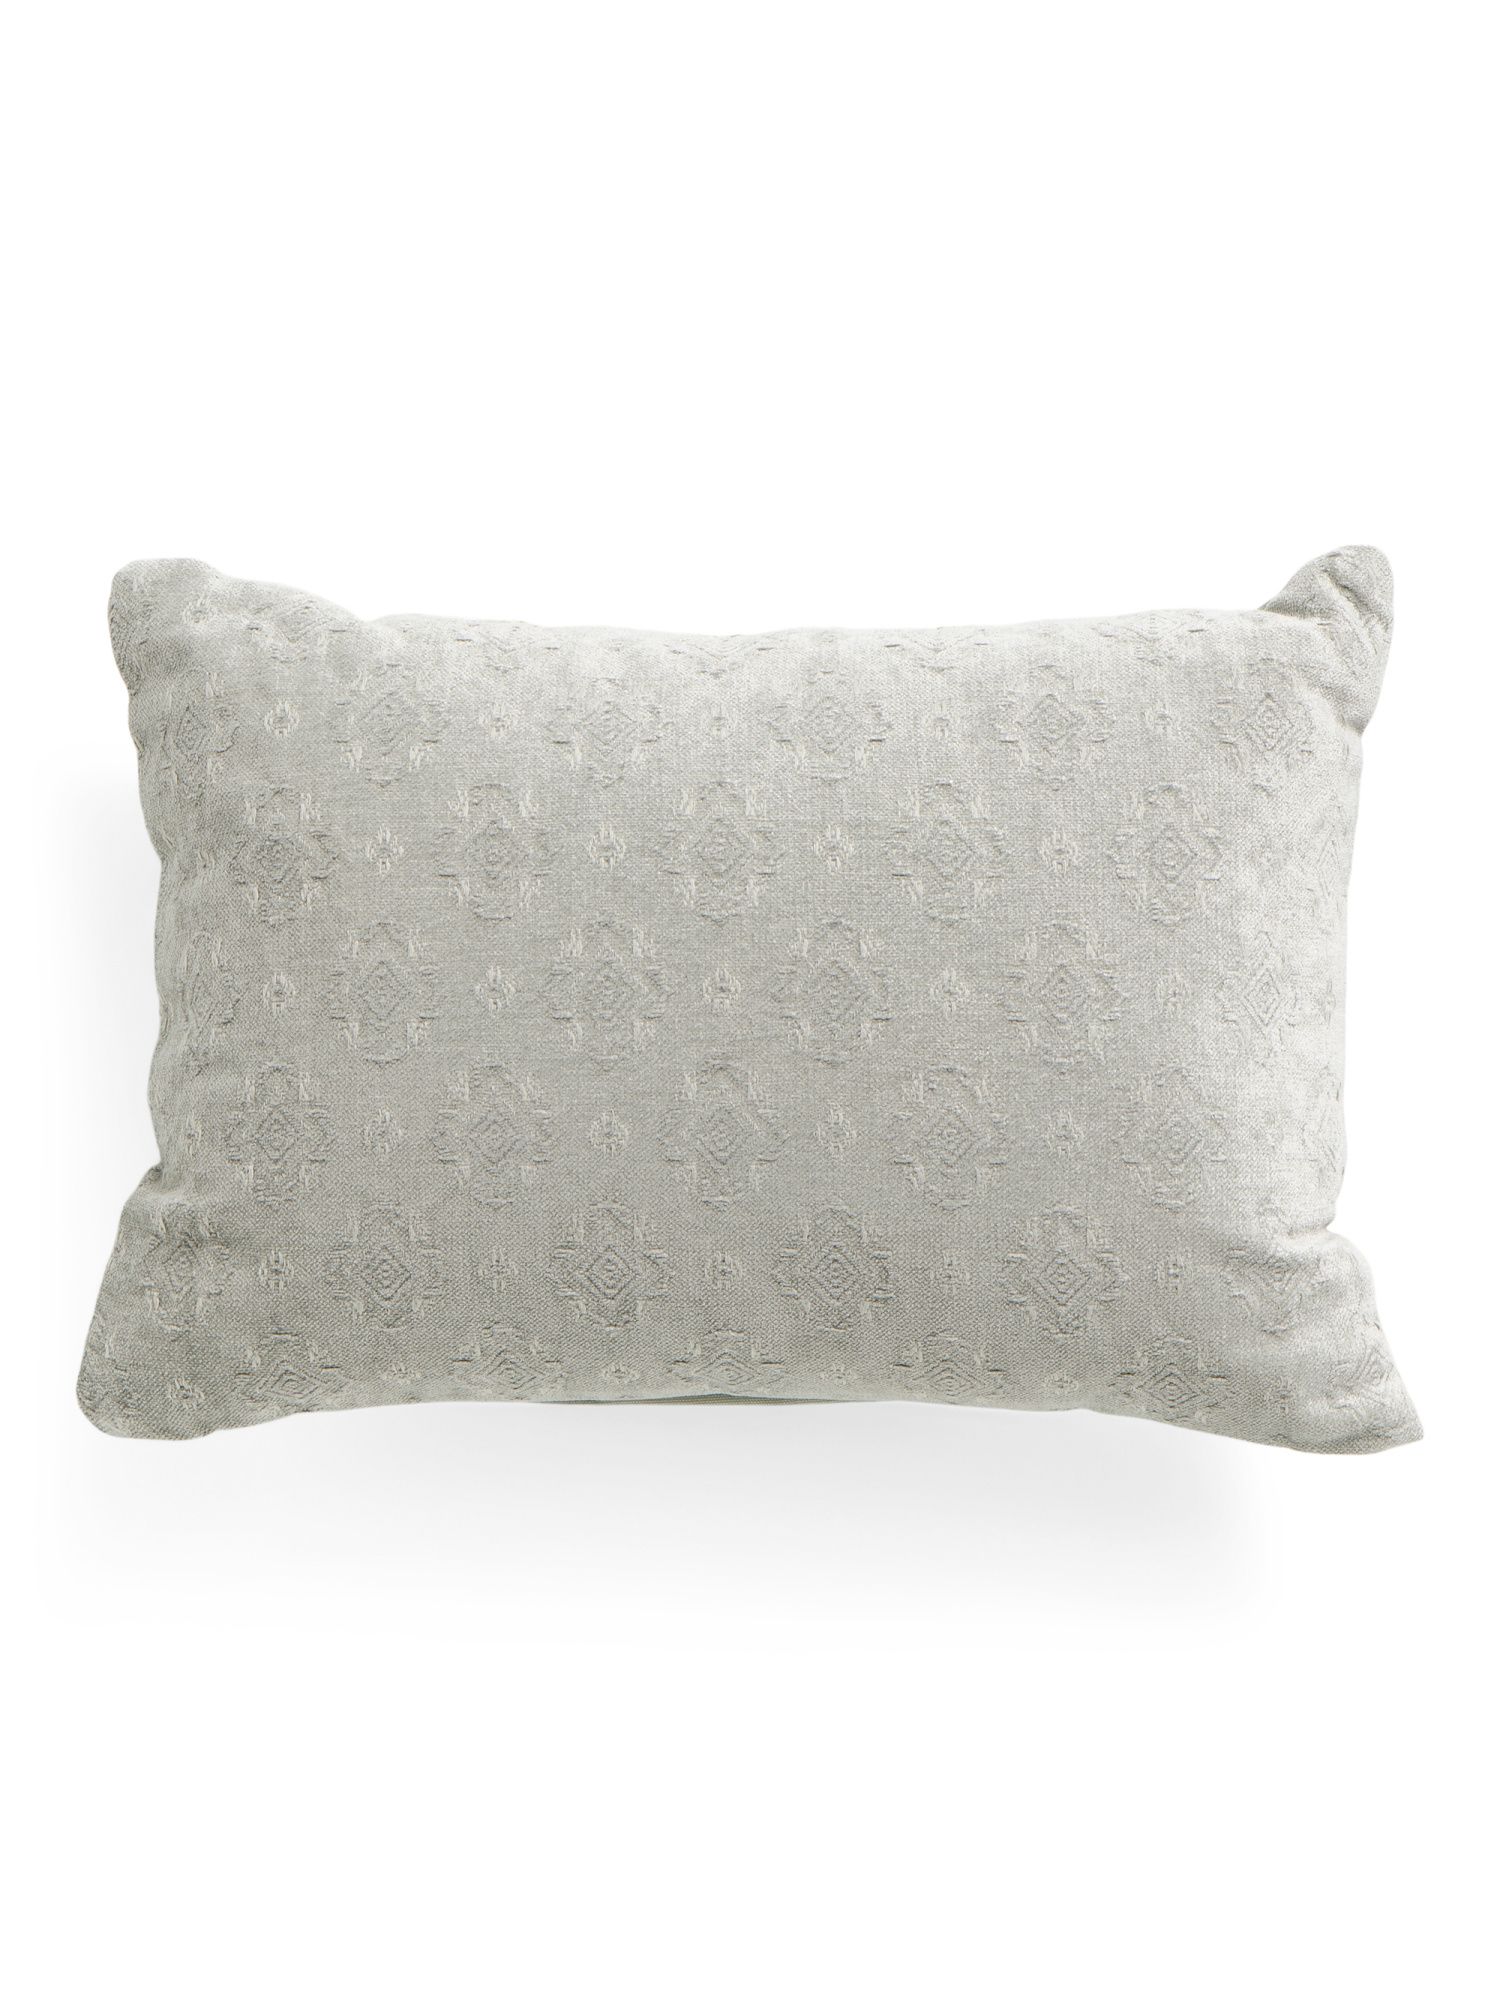 14x20 Velvet Textured Pillow | Marshalls